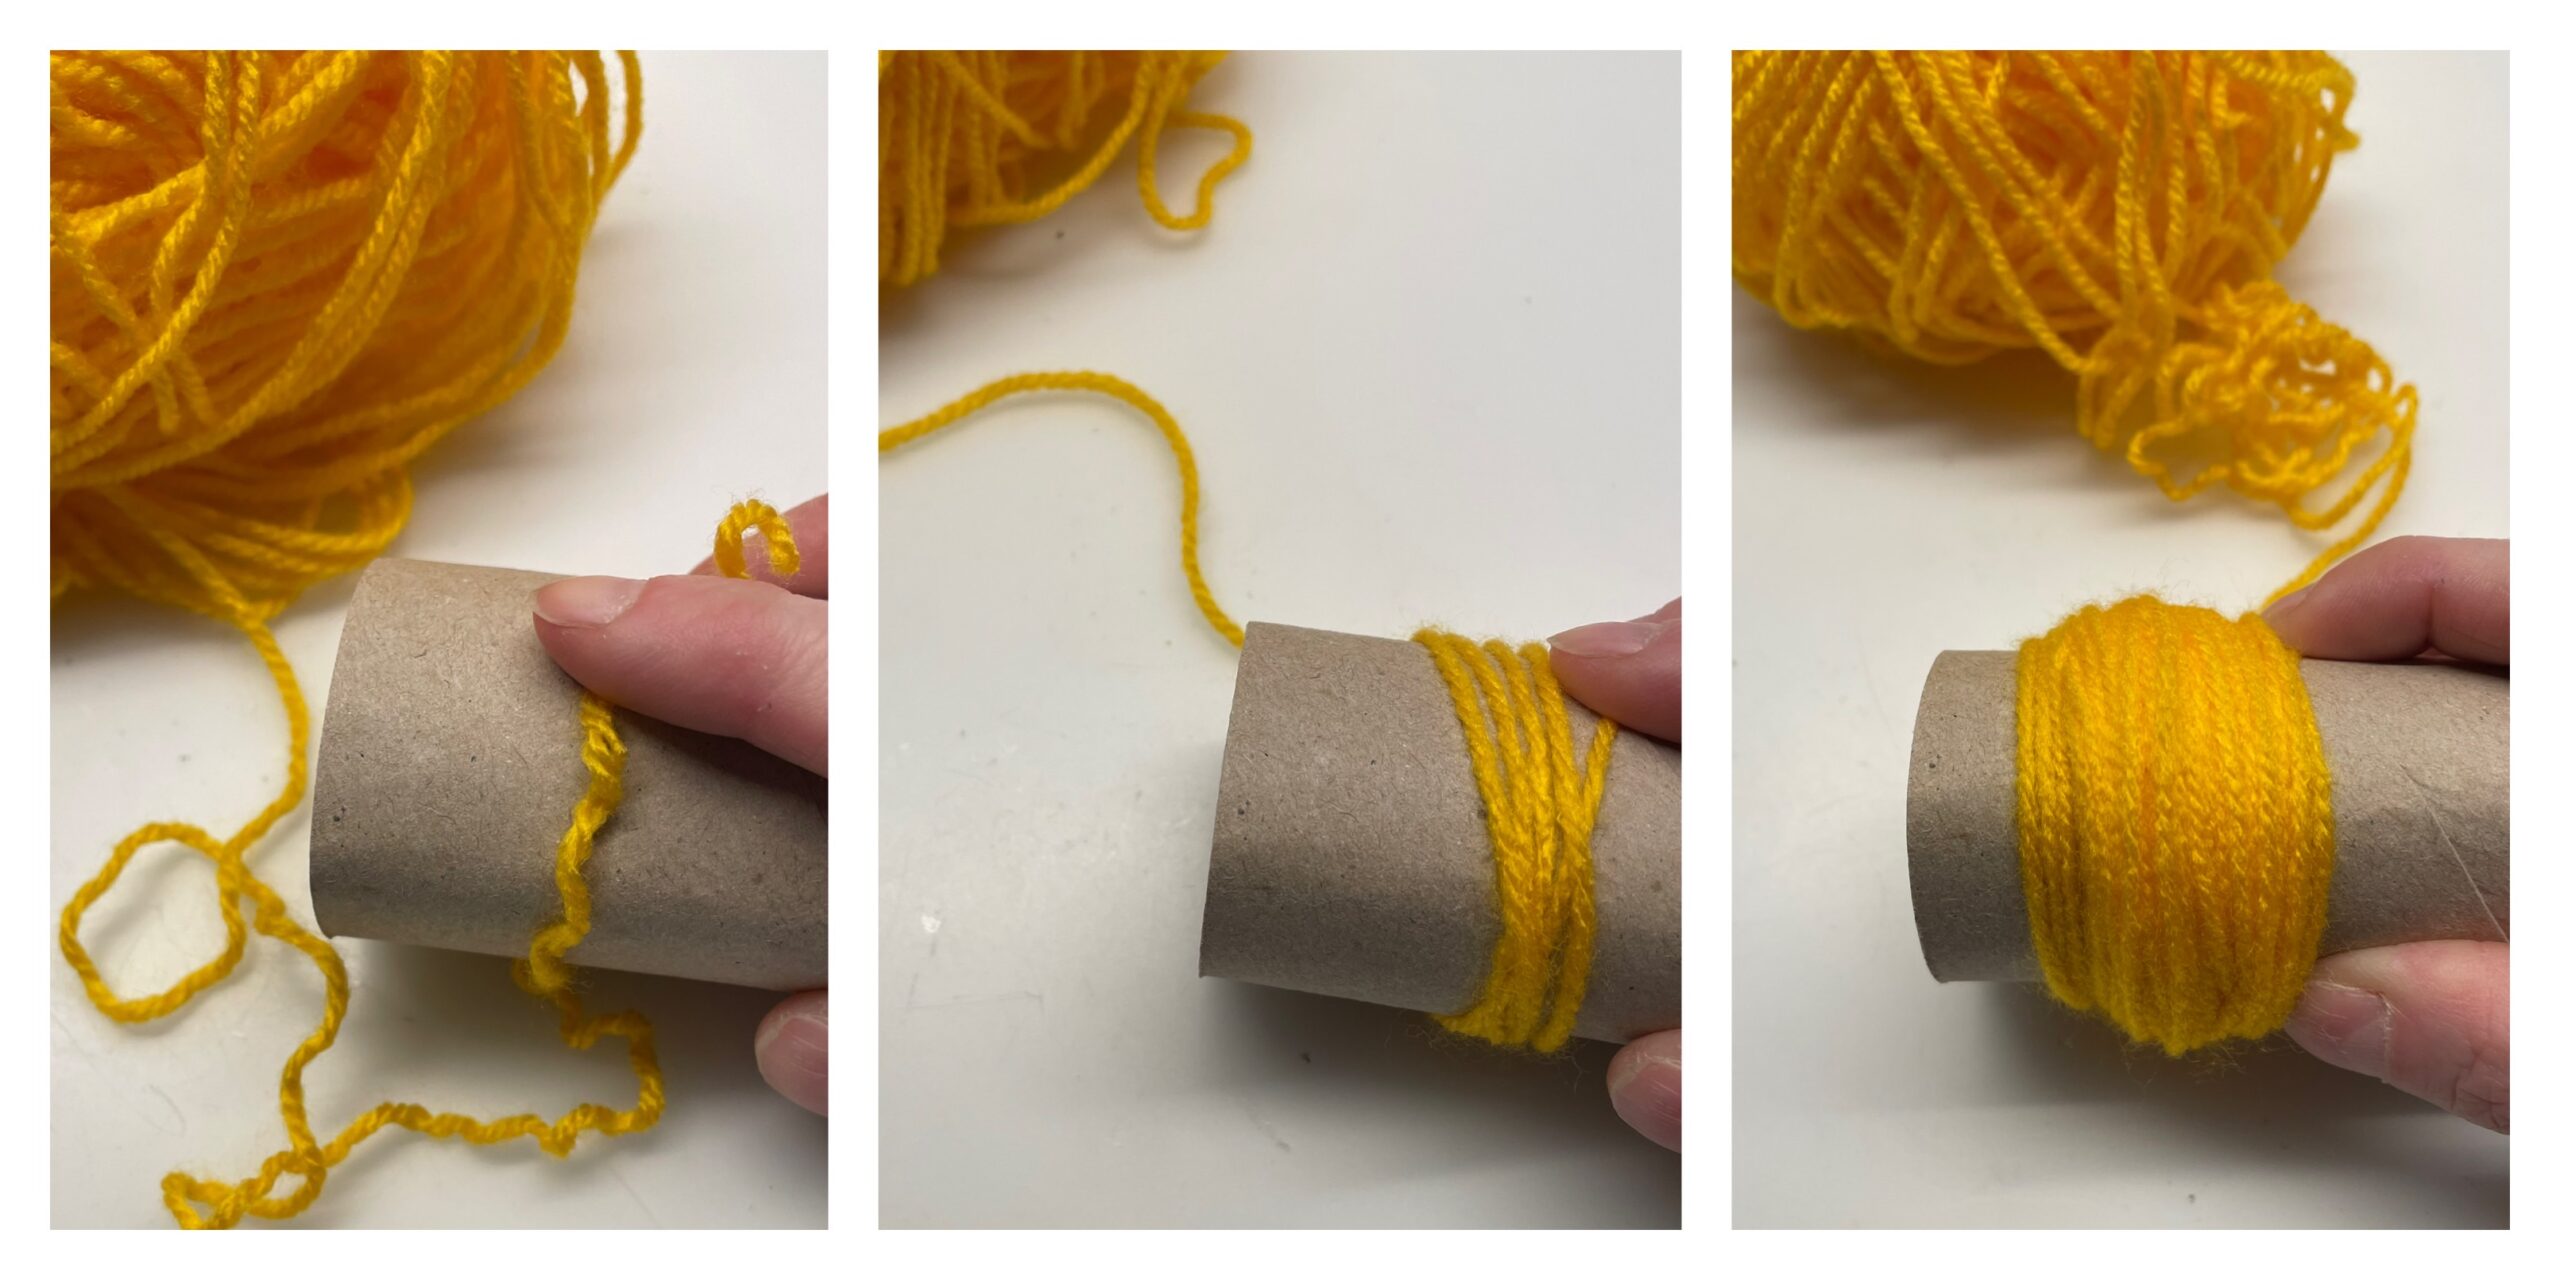 Bild zum Schritt 1 für das Bastel- und DIY-Abenteuer für Kinder: 'Zuerst bastelt ihr aus gelber Wolle einen Pommel/ Wuschel. Als...'